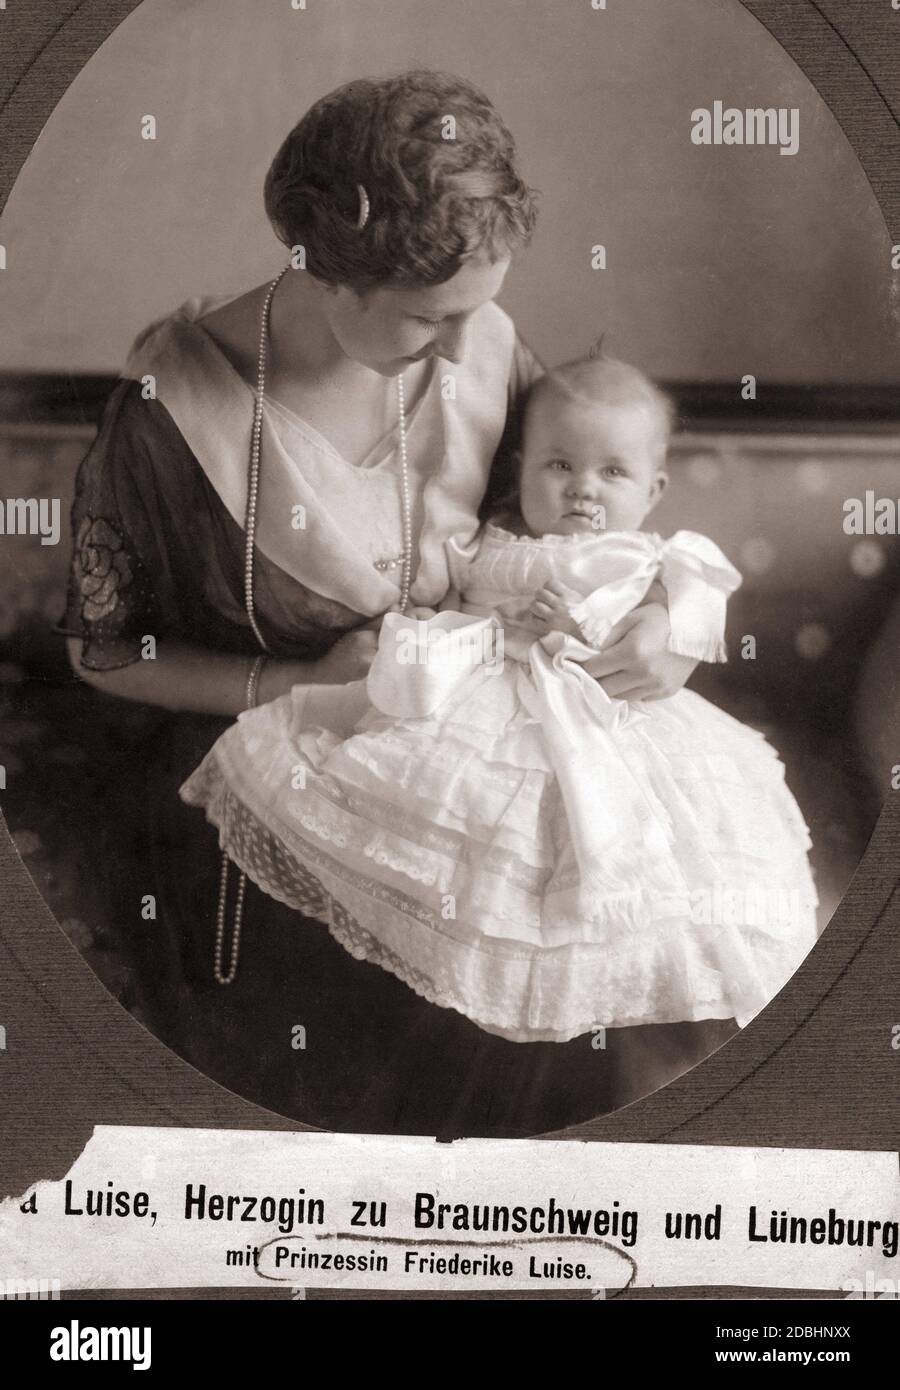 El retrato muestra a Duchess Viktoria zu Braunschweig-Lueneburg (nacida de Prusia) con su hija la Princesa Friederike Luise de Hanover (más tarde Reina de Grecia). Foto sin fecha, tomada alrededor de 1917. Foto de stock